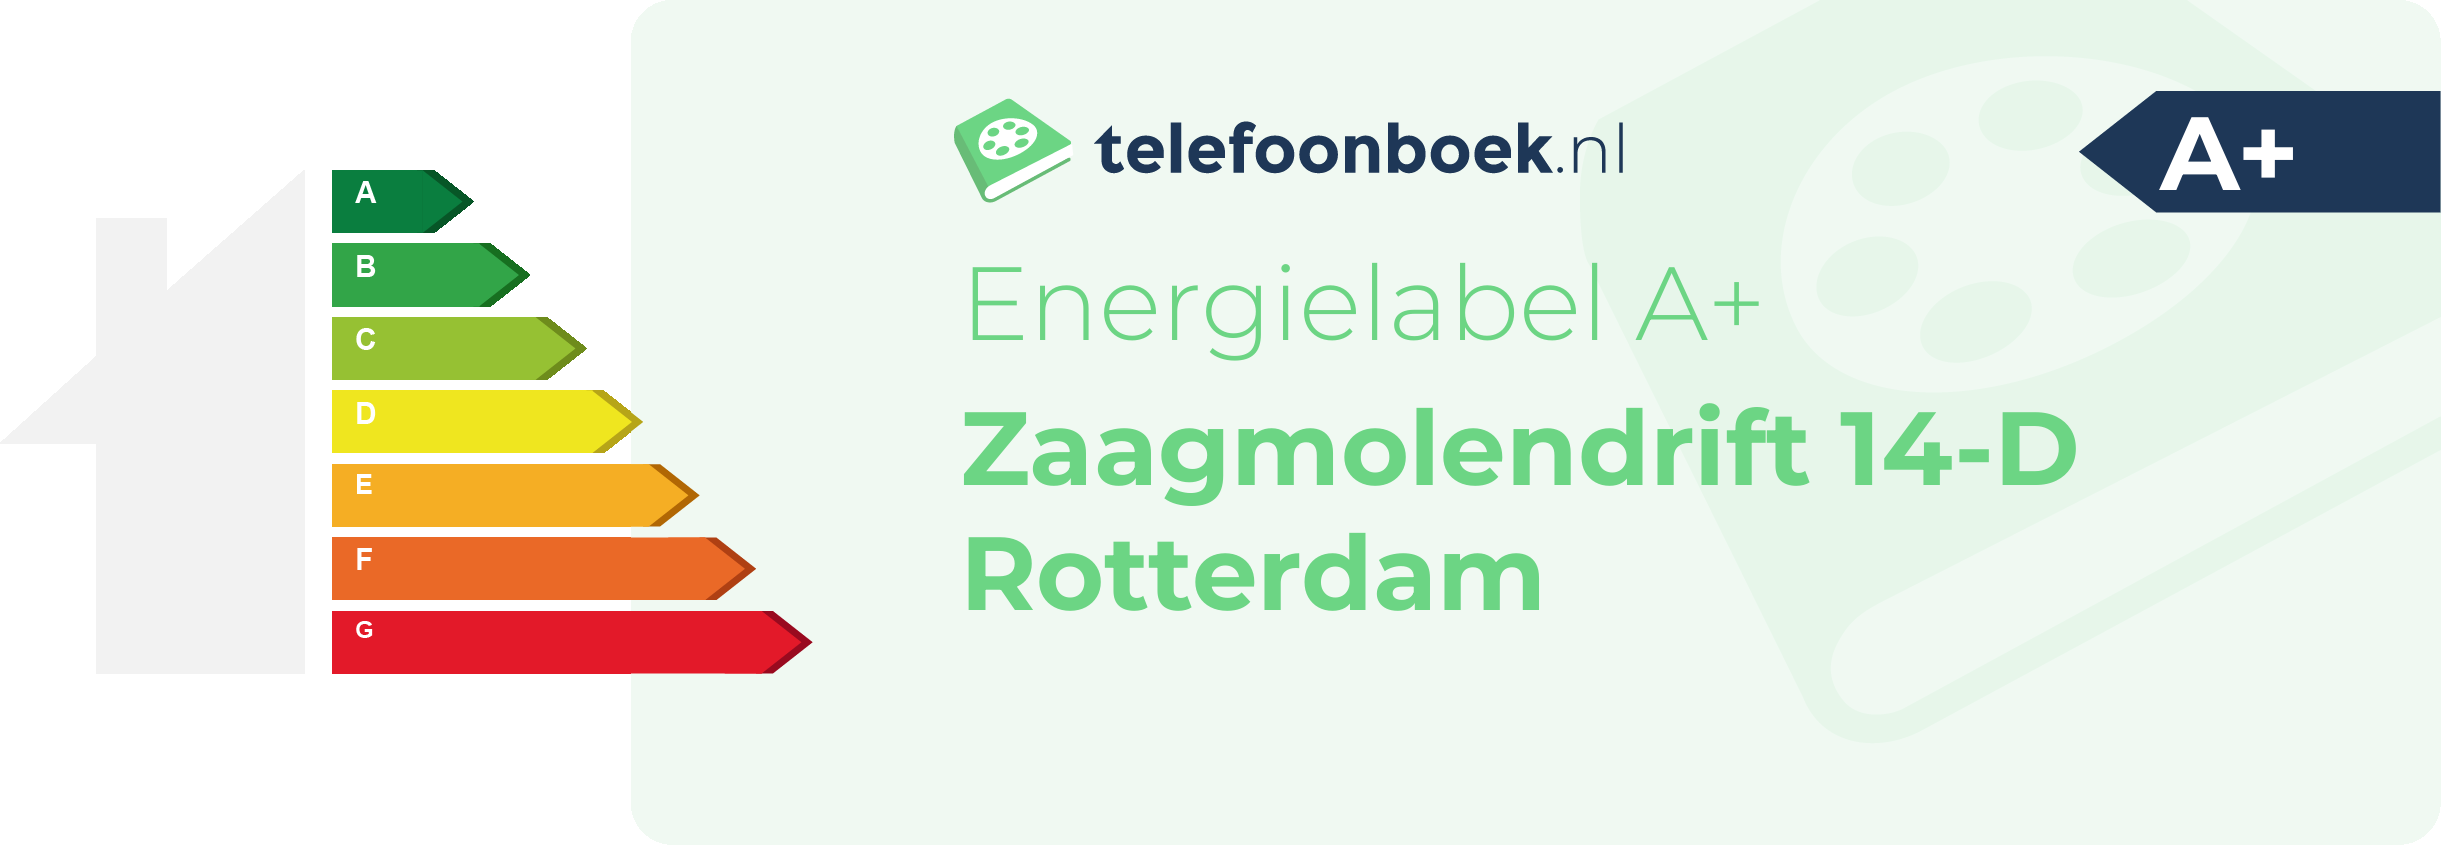 Energielabel Zaagmolendrift 14-D Rotterdam